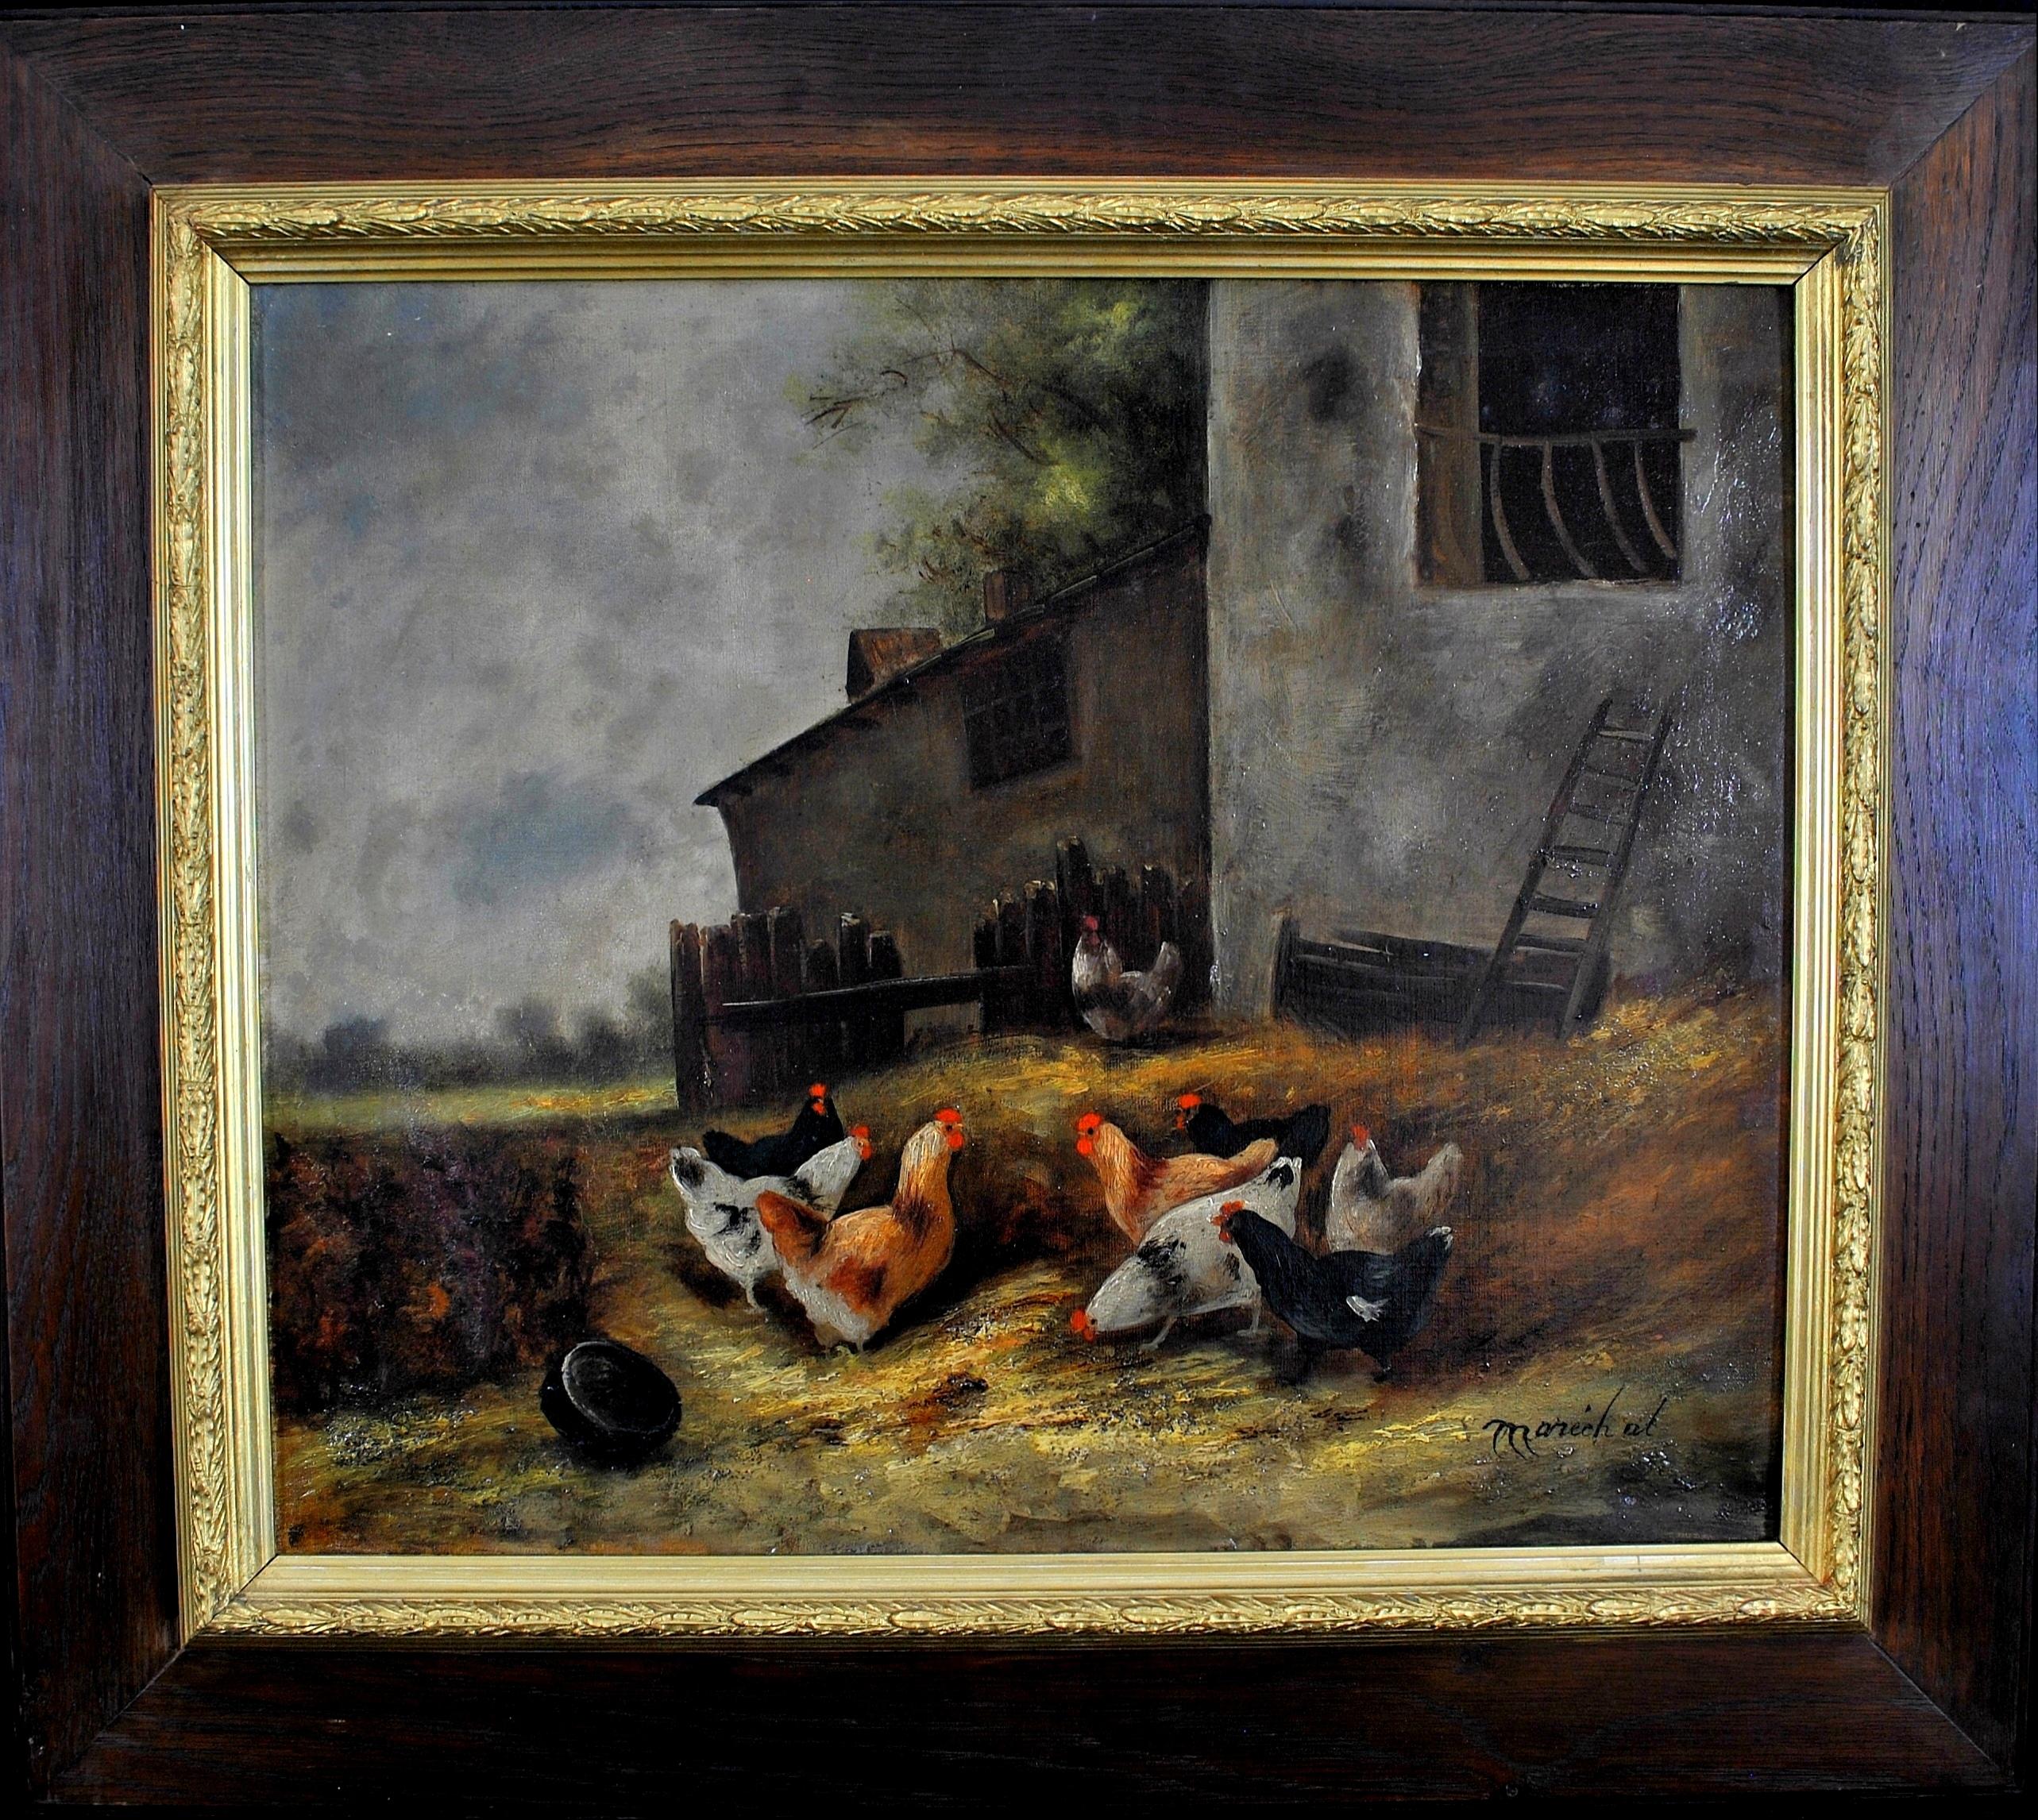 Animal Painting Charles Marechal - Peinture à l'huile sur toile française du 19ème siècle représentant des poulets dans une ferme